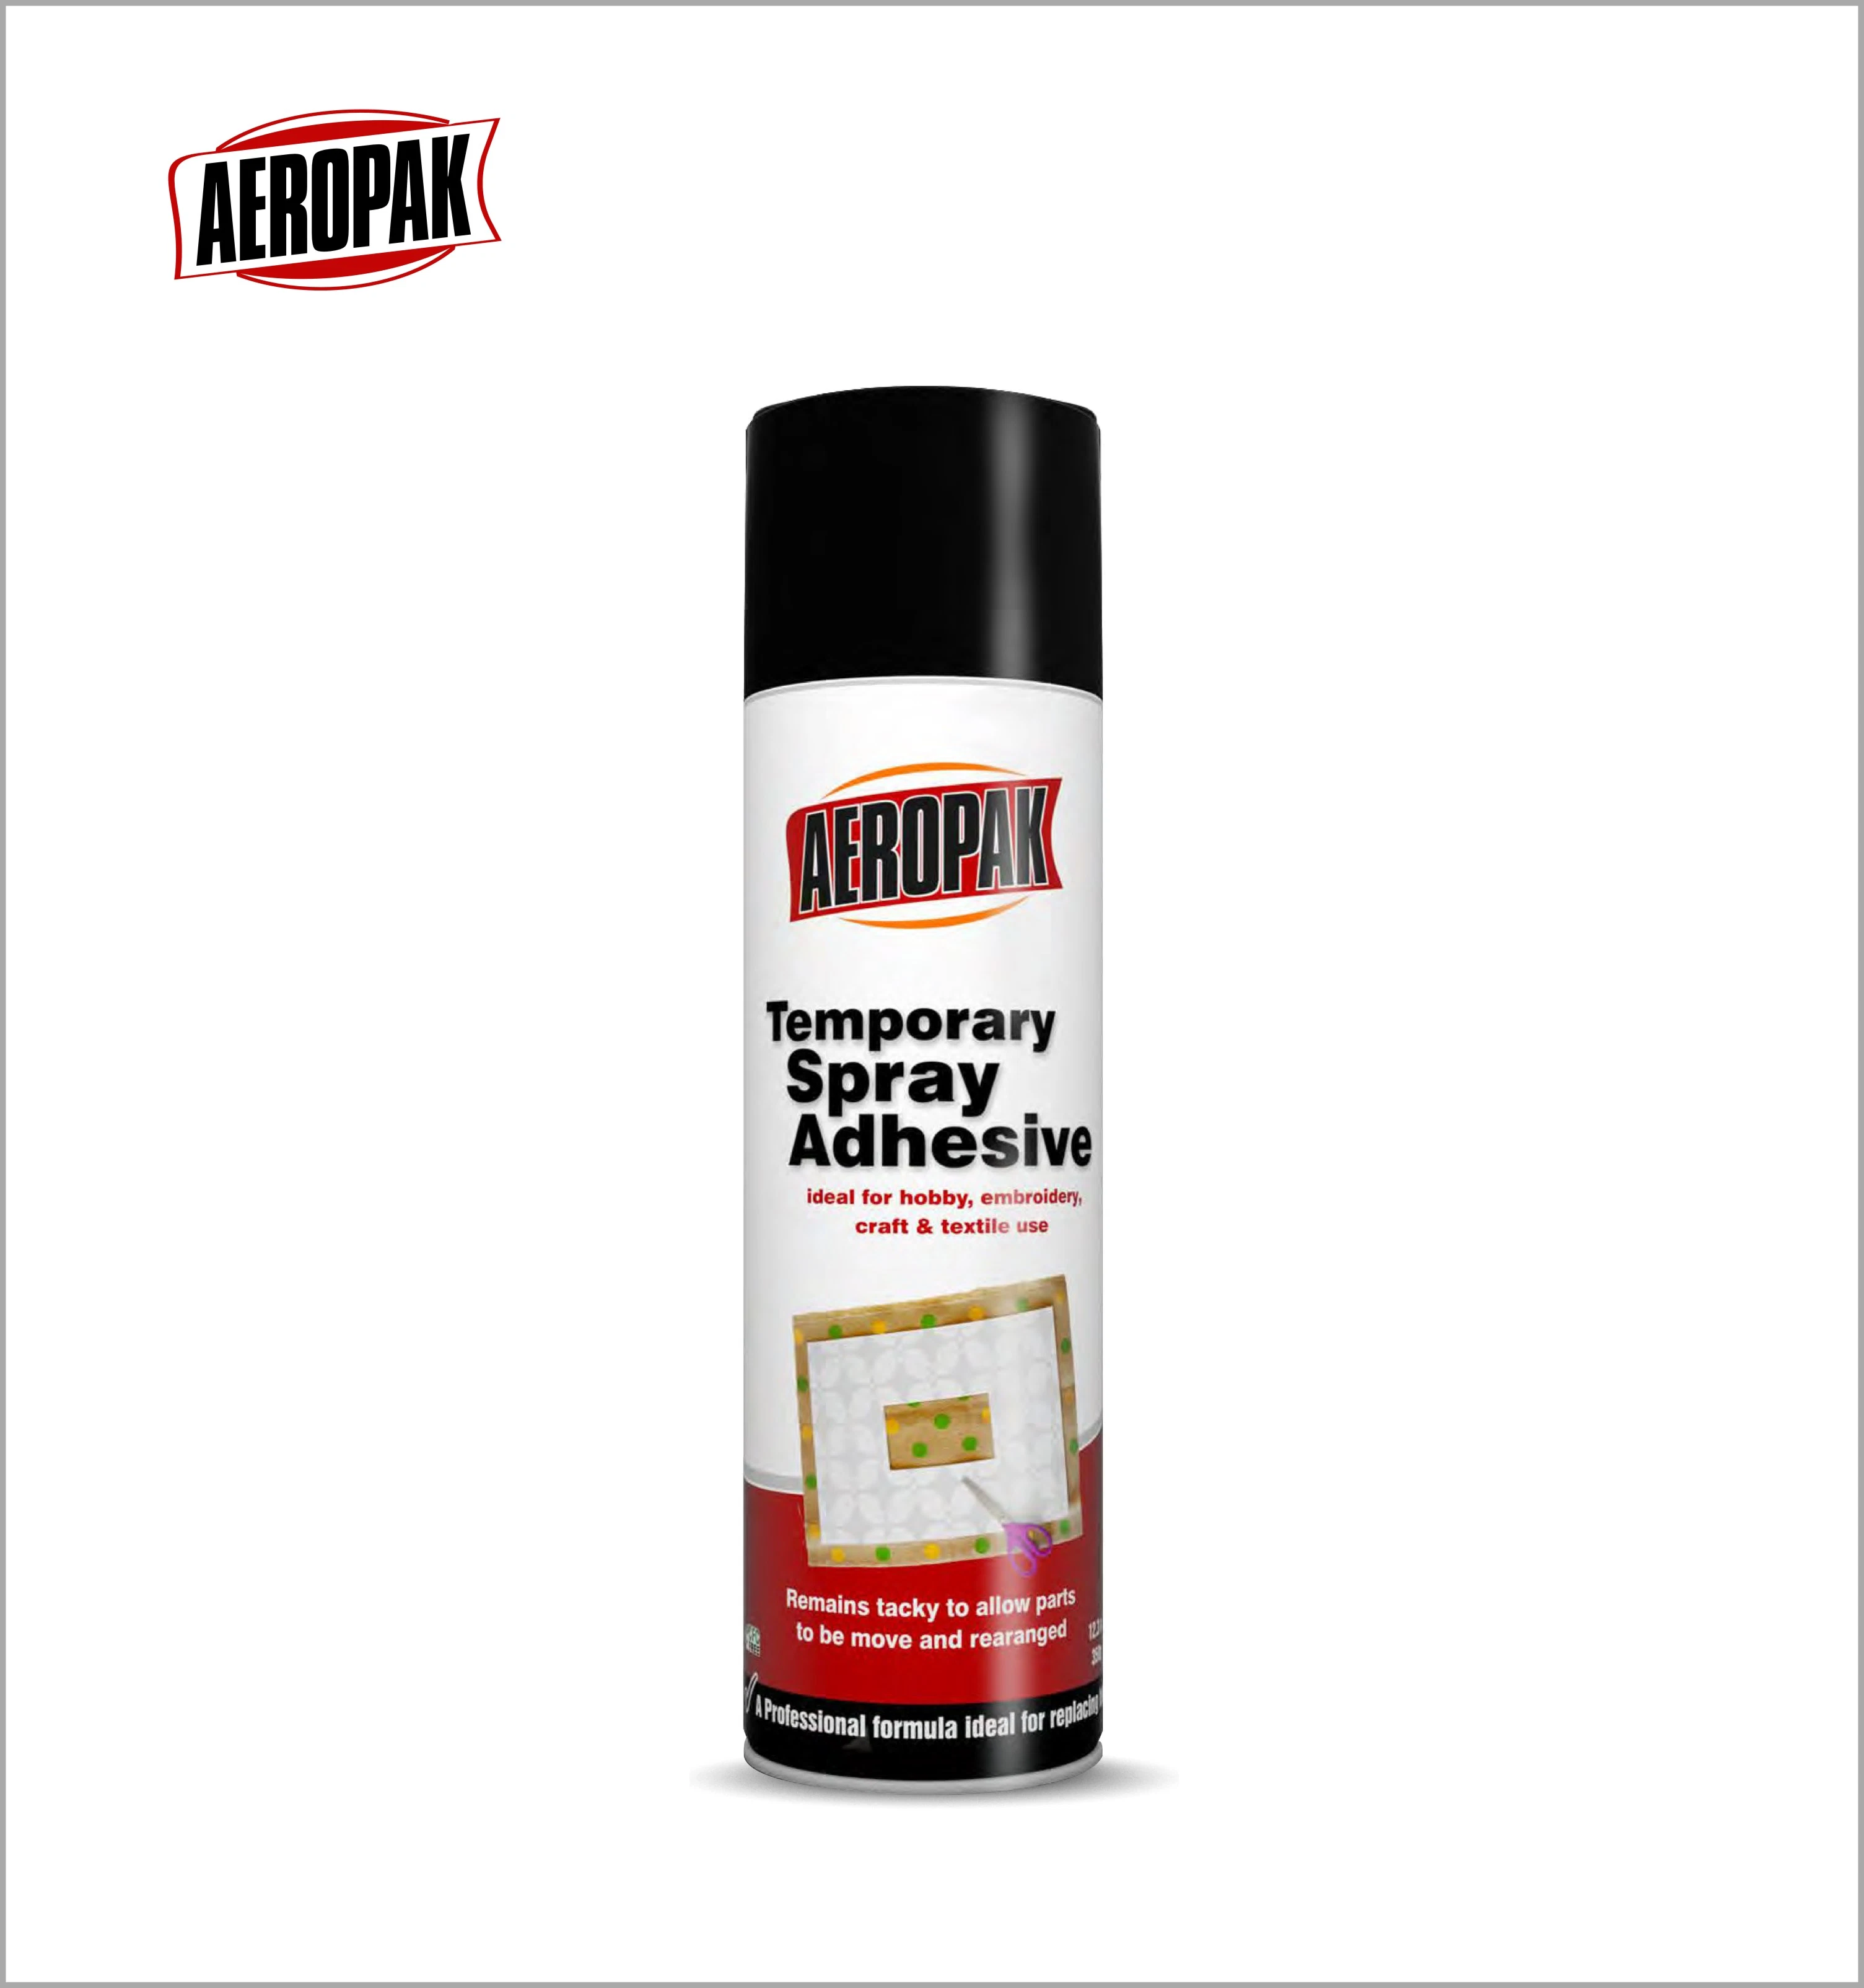 Aeropak Temporary Spray Adhesive & Textile Spray Adhesive